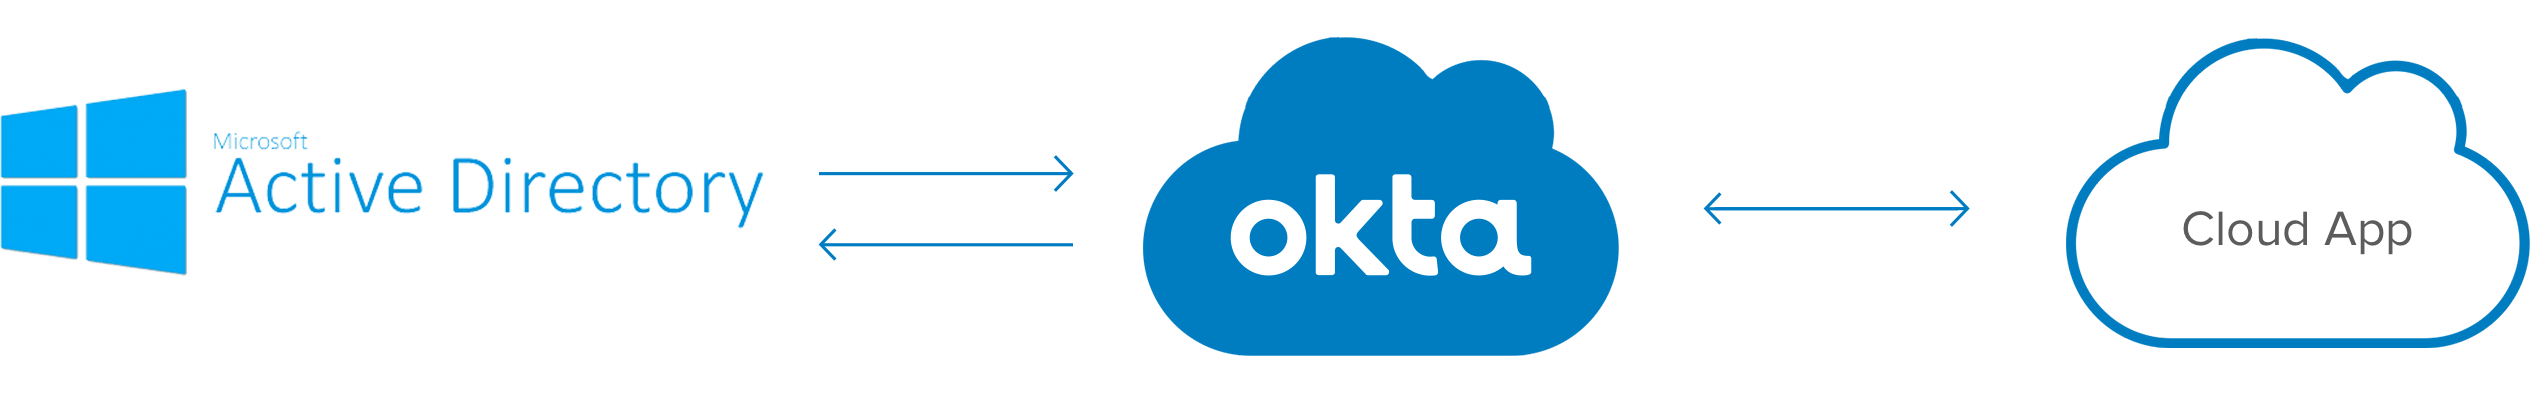 Okta Logo - Okta Logos